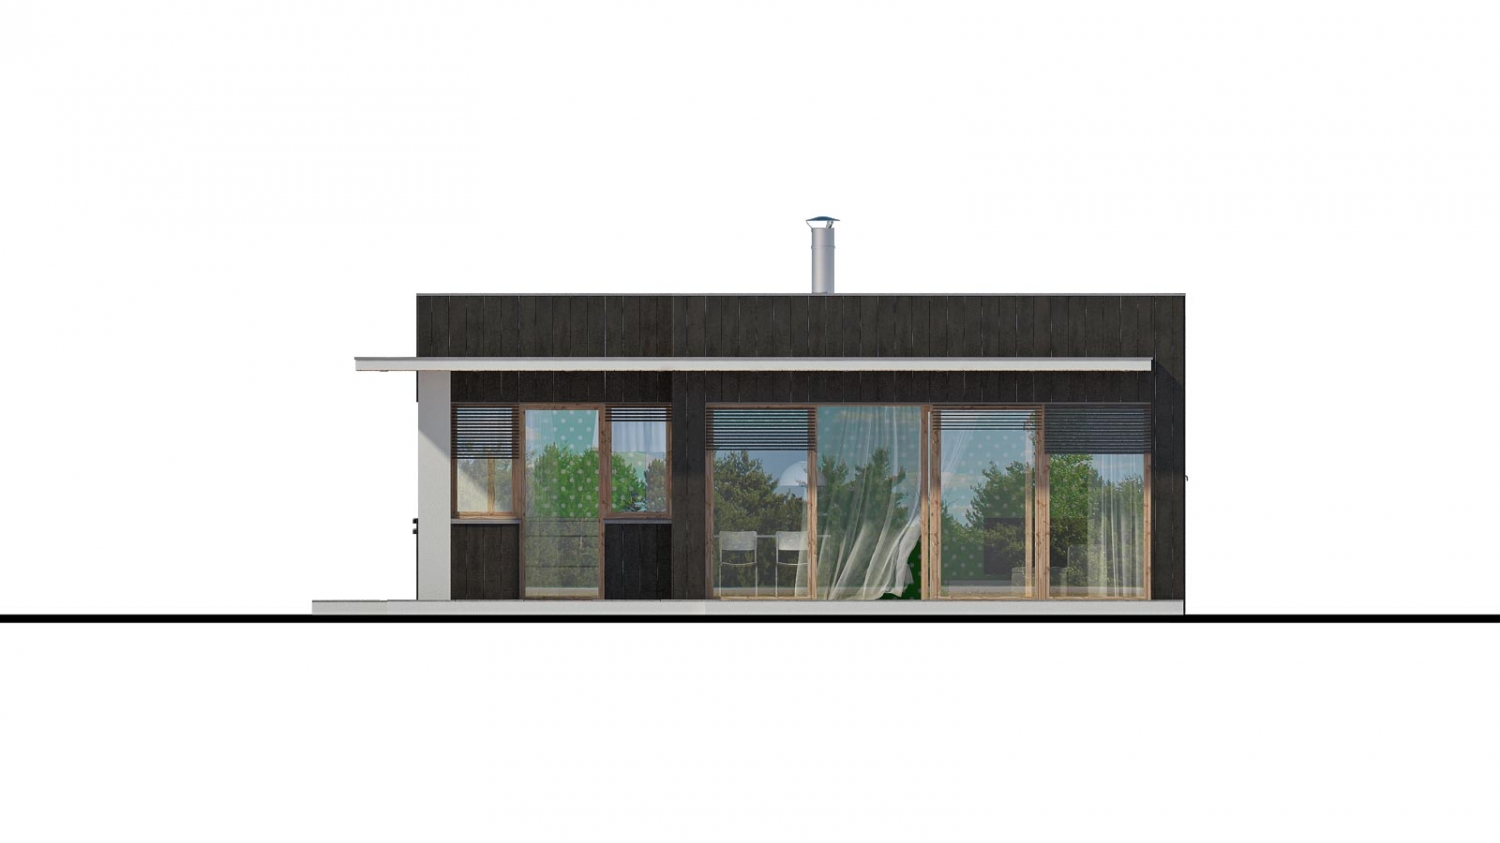 Moderný malý projekt rodinného domu s plochou strechou na úzky pozemok. Na presvetlenie chodby slúži svetlík Velux.